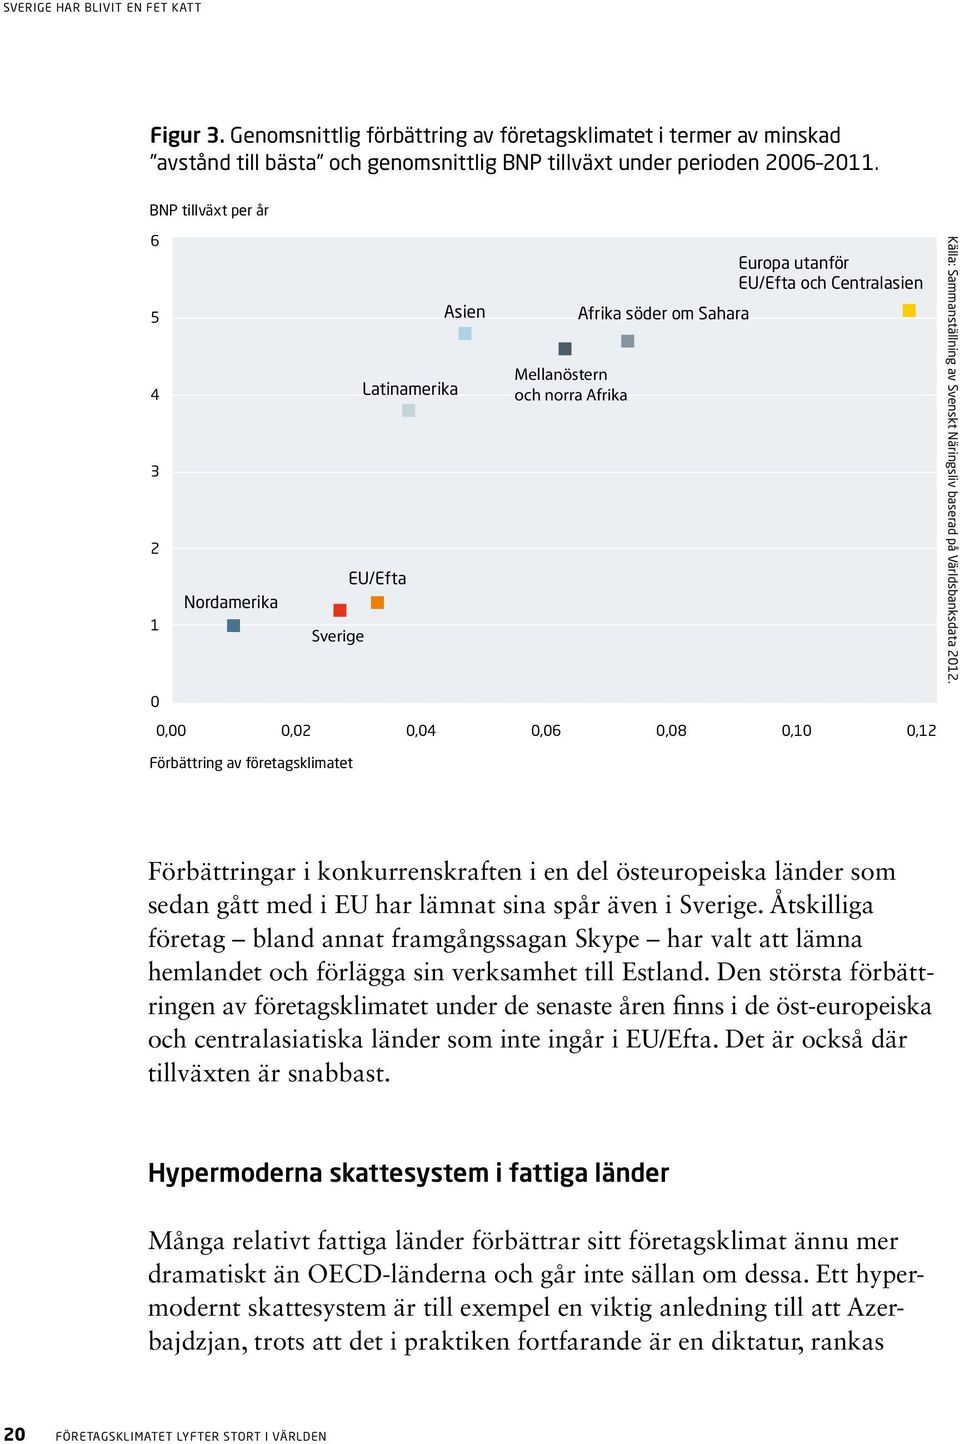 Svenskt Näringsliv baserad på Världsbanksdata 2012.